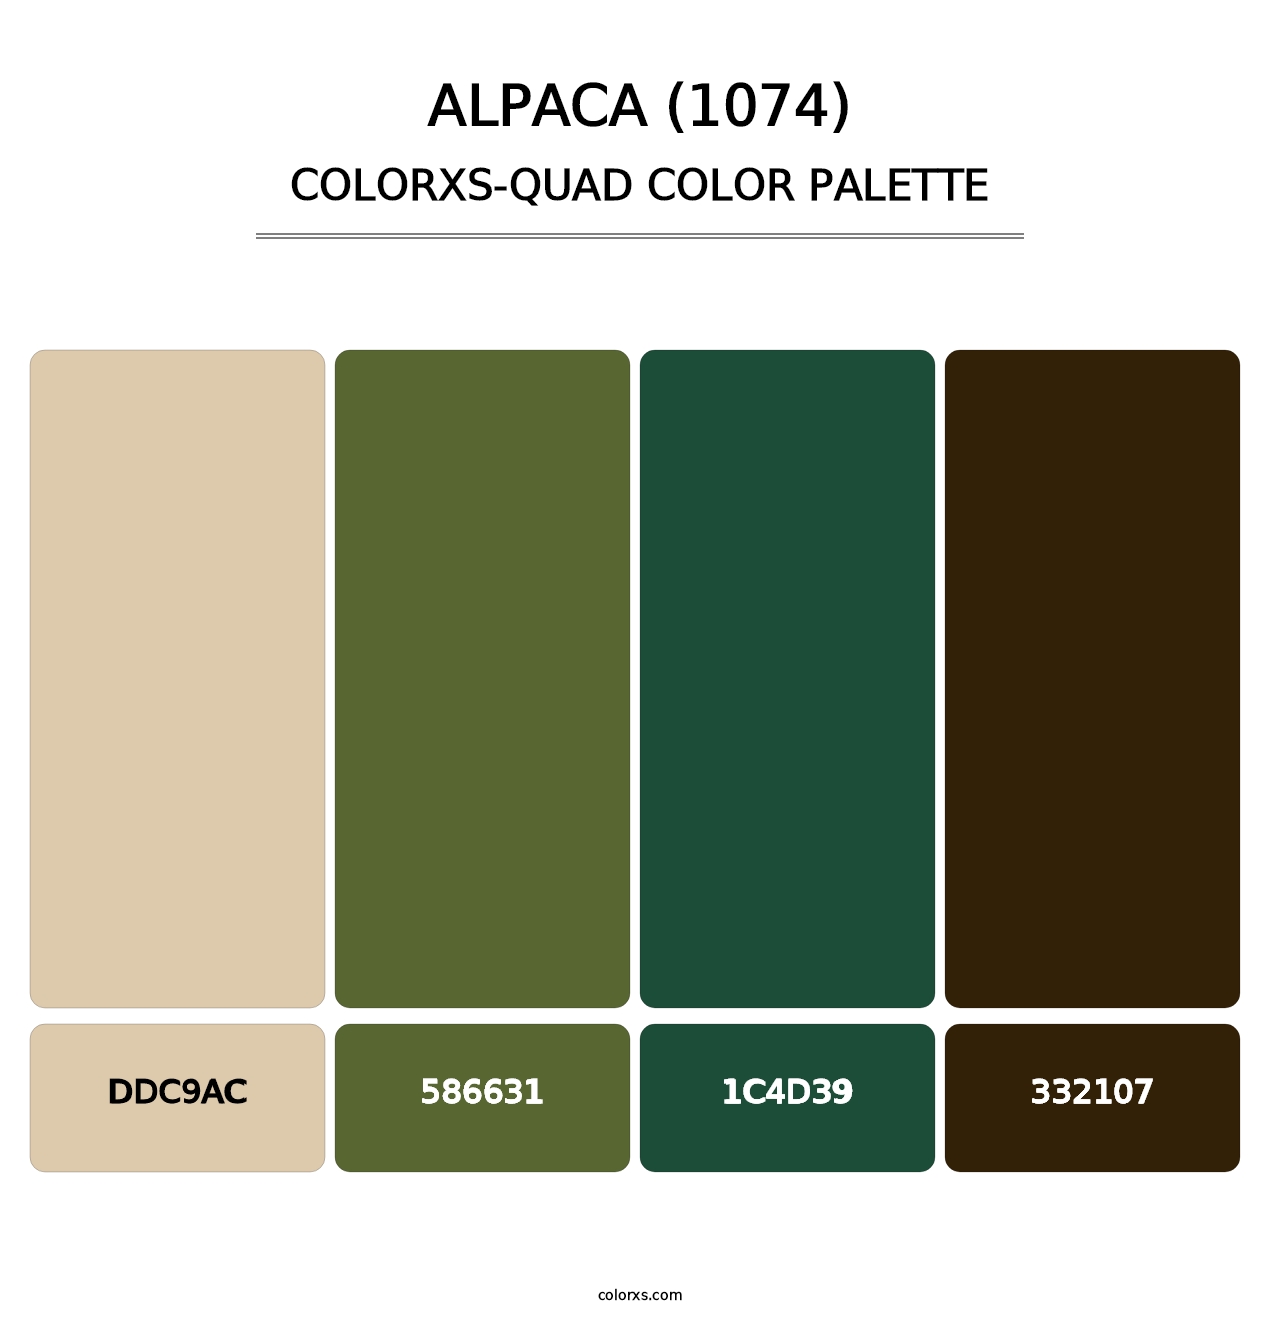 Alpaca (1074) - Colorxs Quad Palette